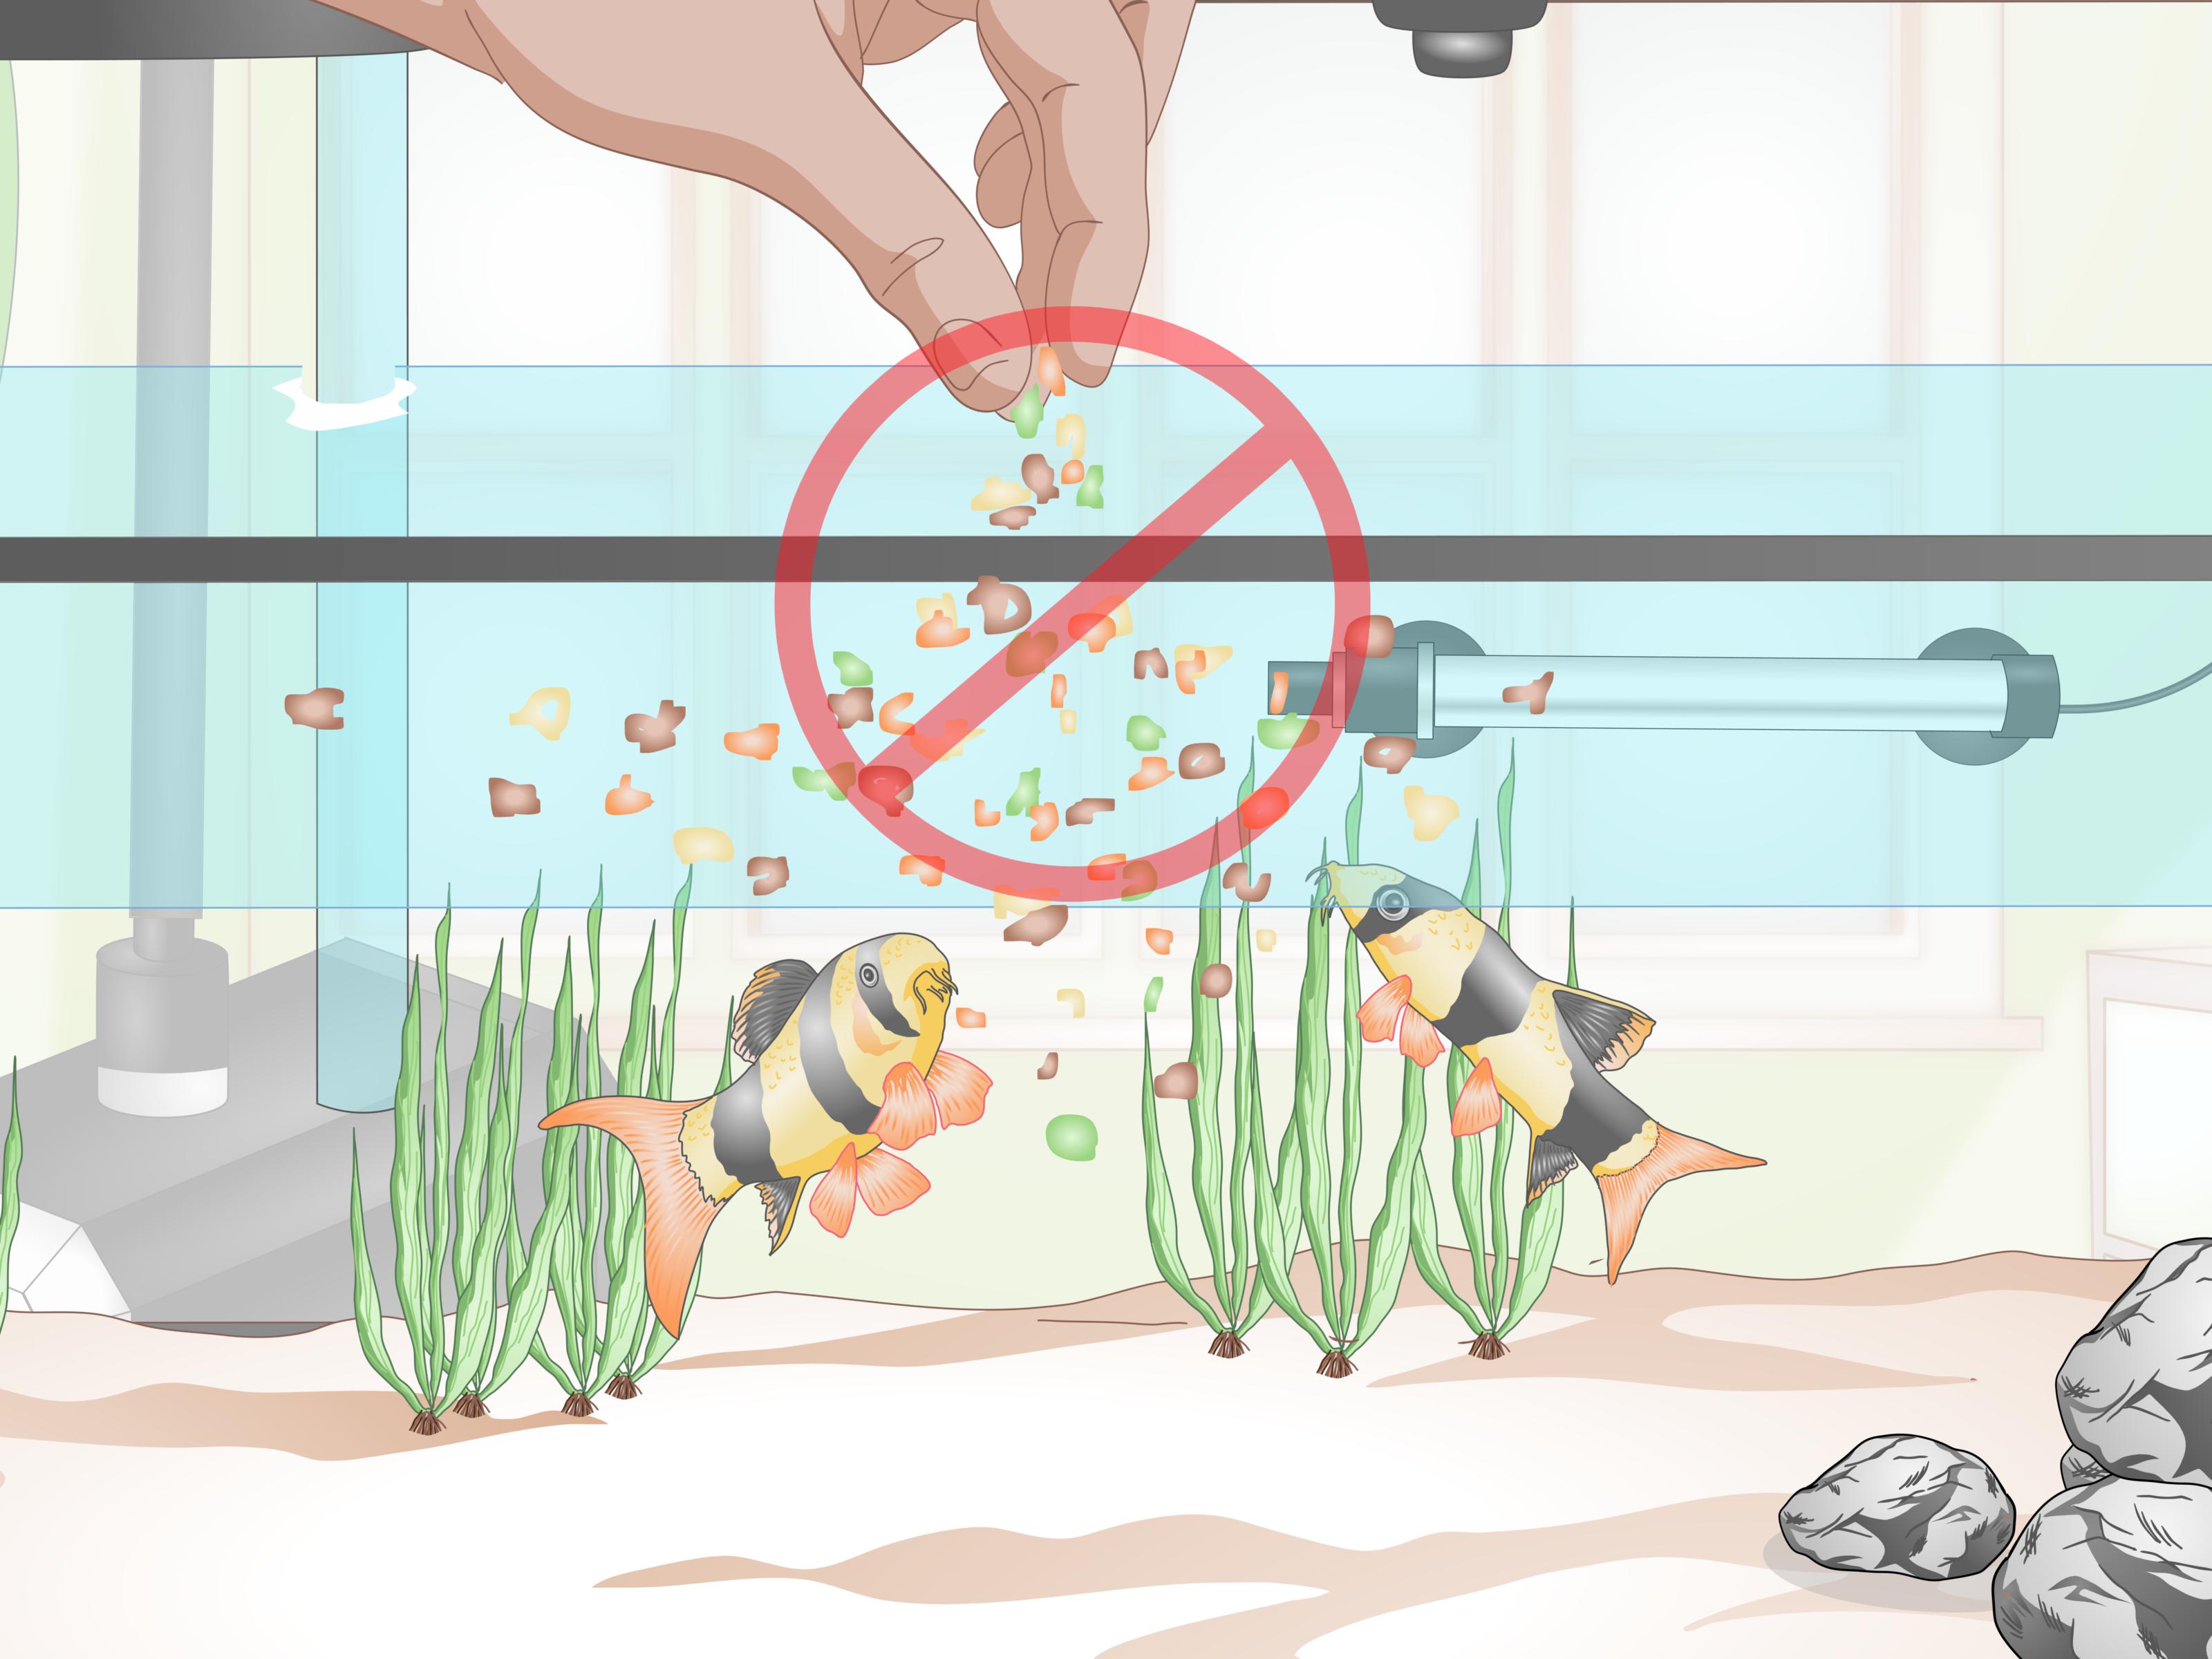 Допустимо ли использовать воду из под крана для аквариума в домашних условиях?